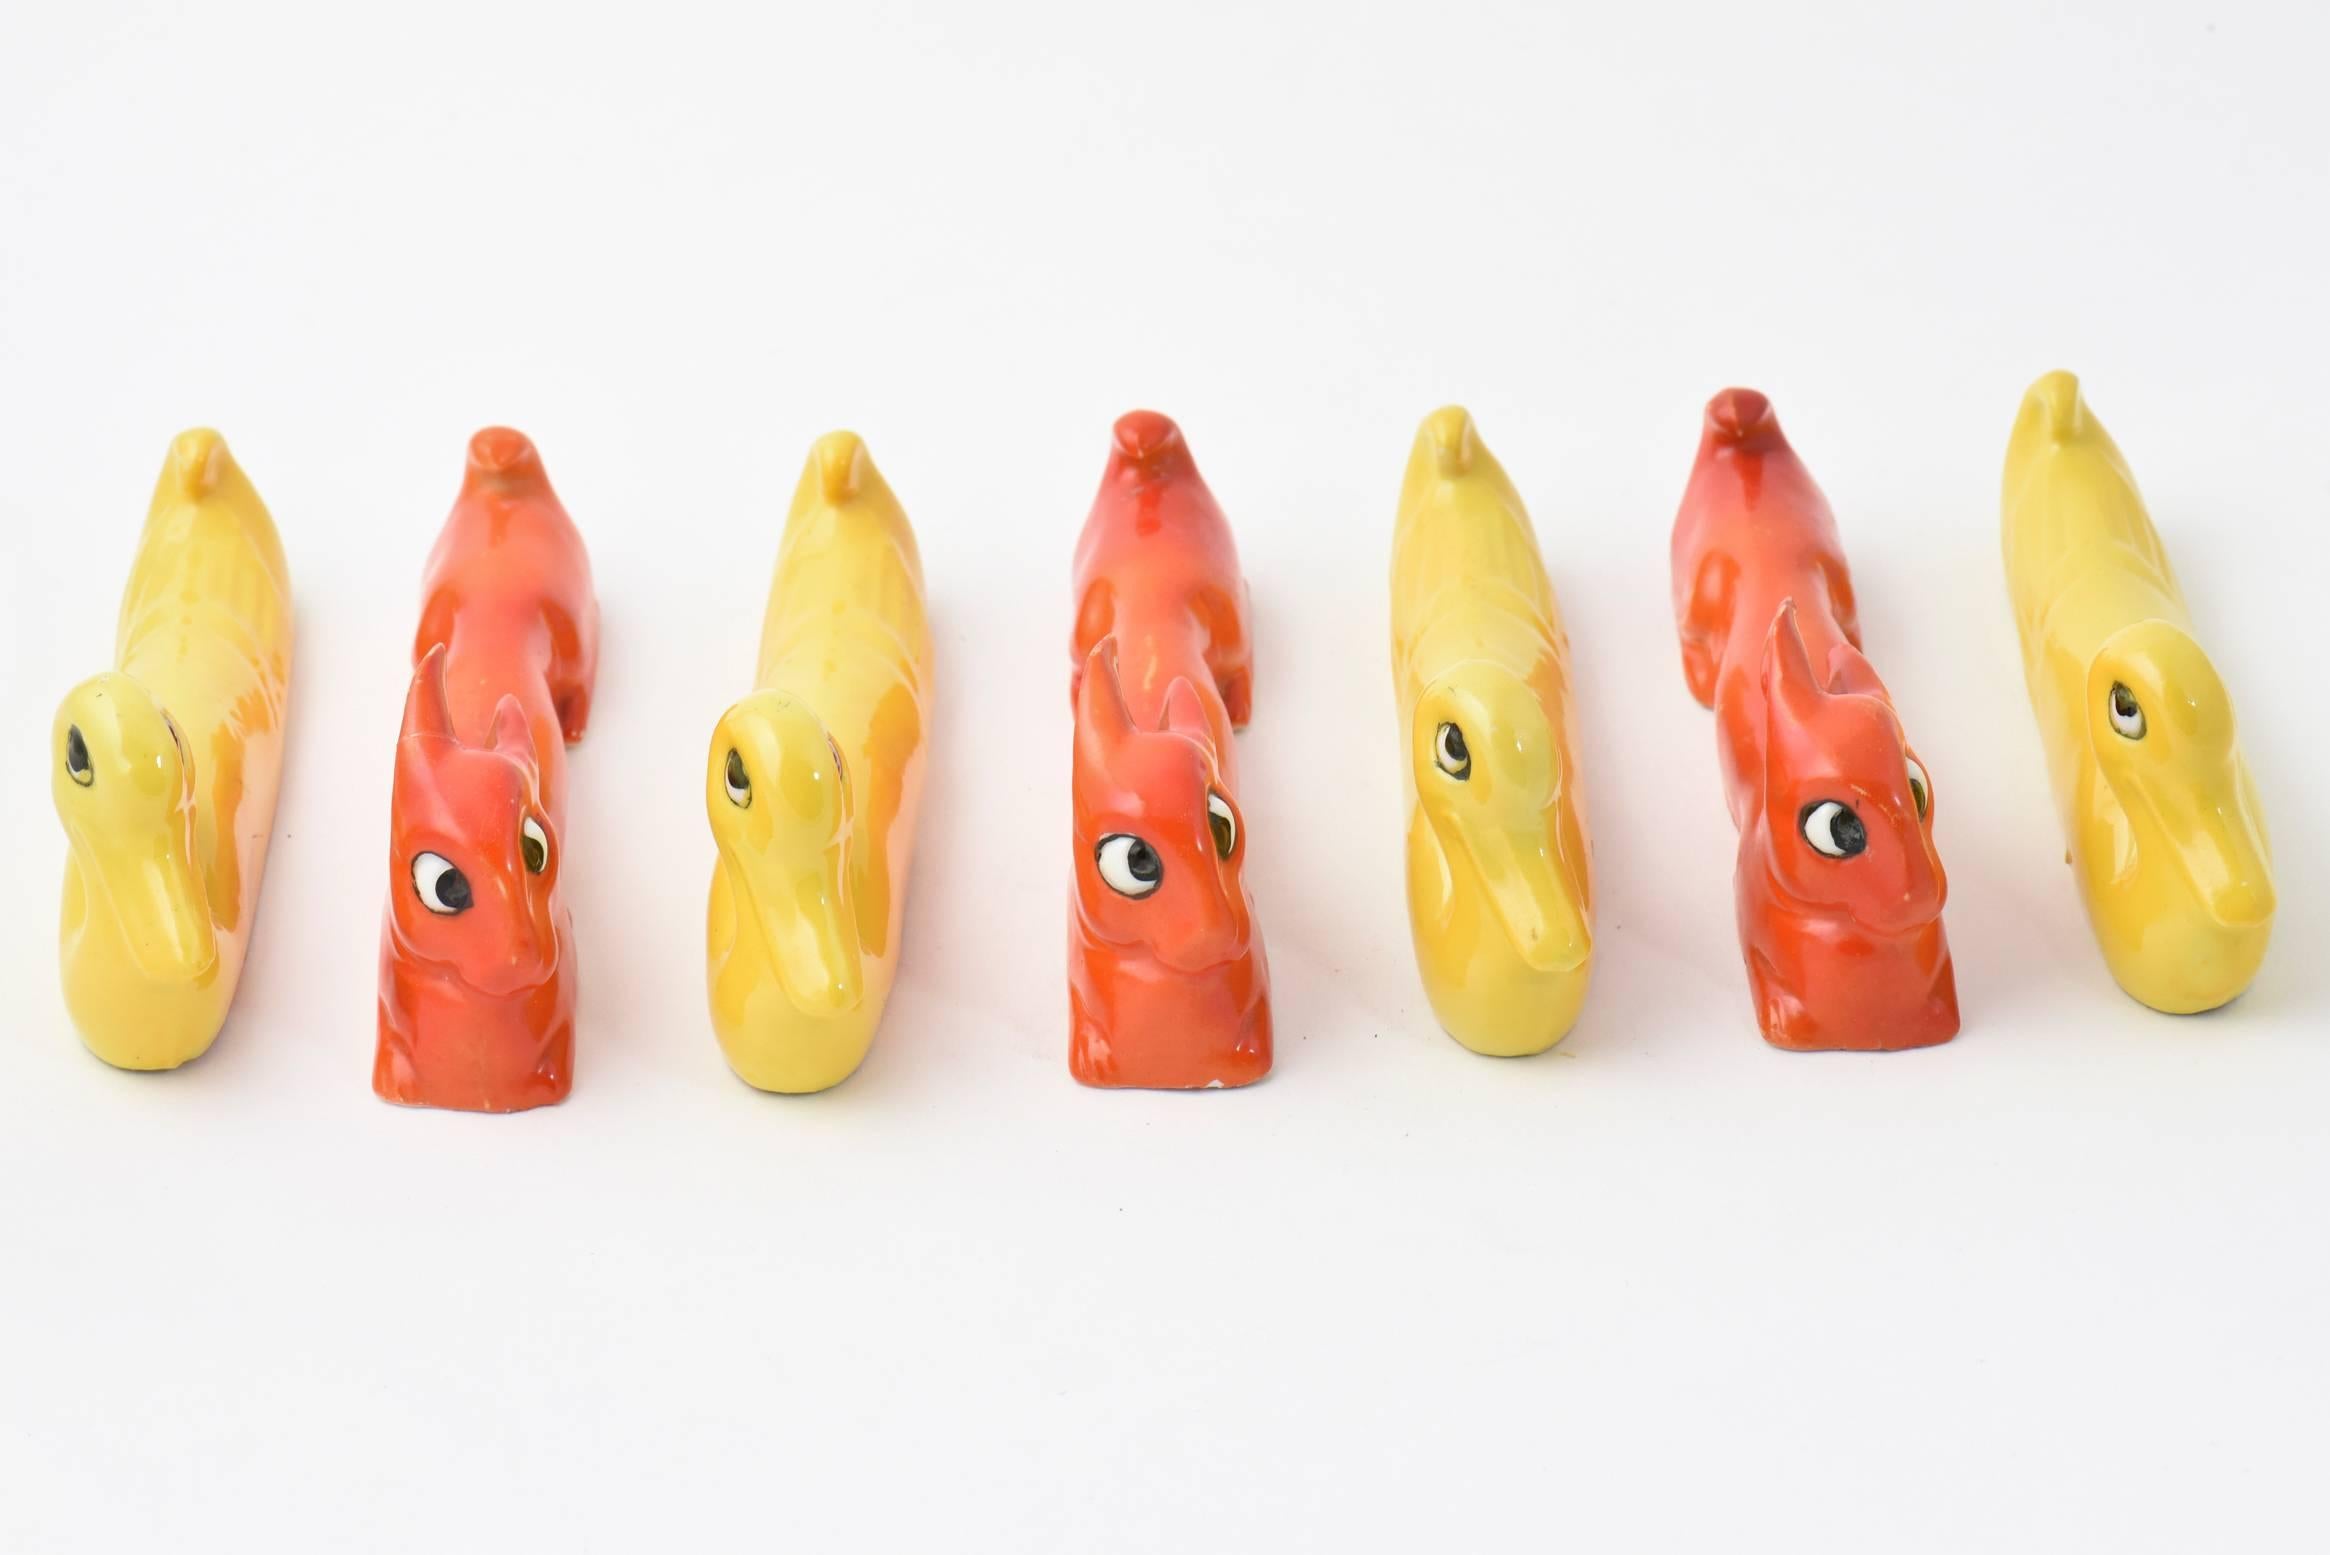 Porte-couteaux en céramique Art Déco peints à la main 
Estampillé Allemagne et numéroté
Quatre canards jaunes 
Trois lapins orange.